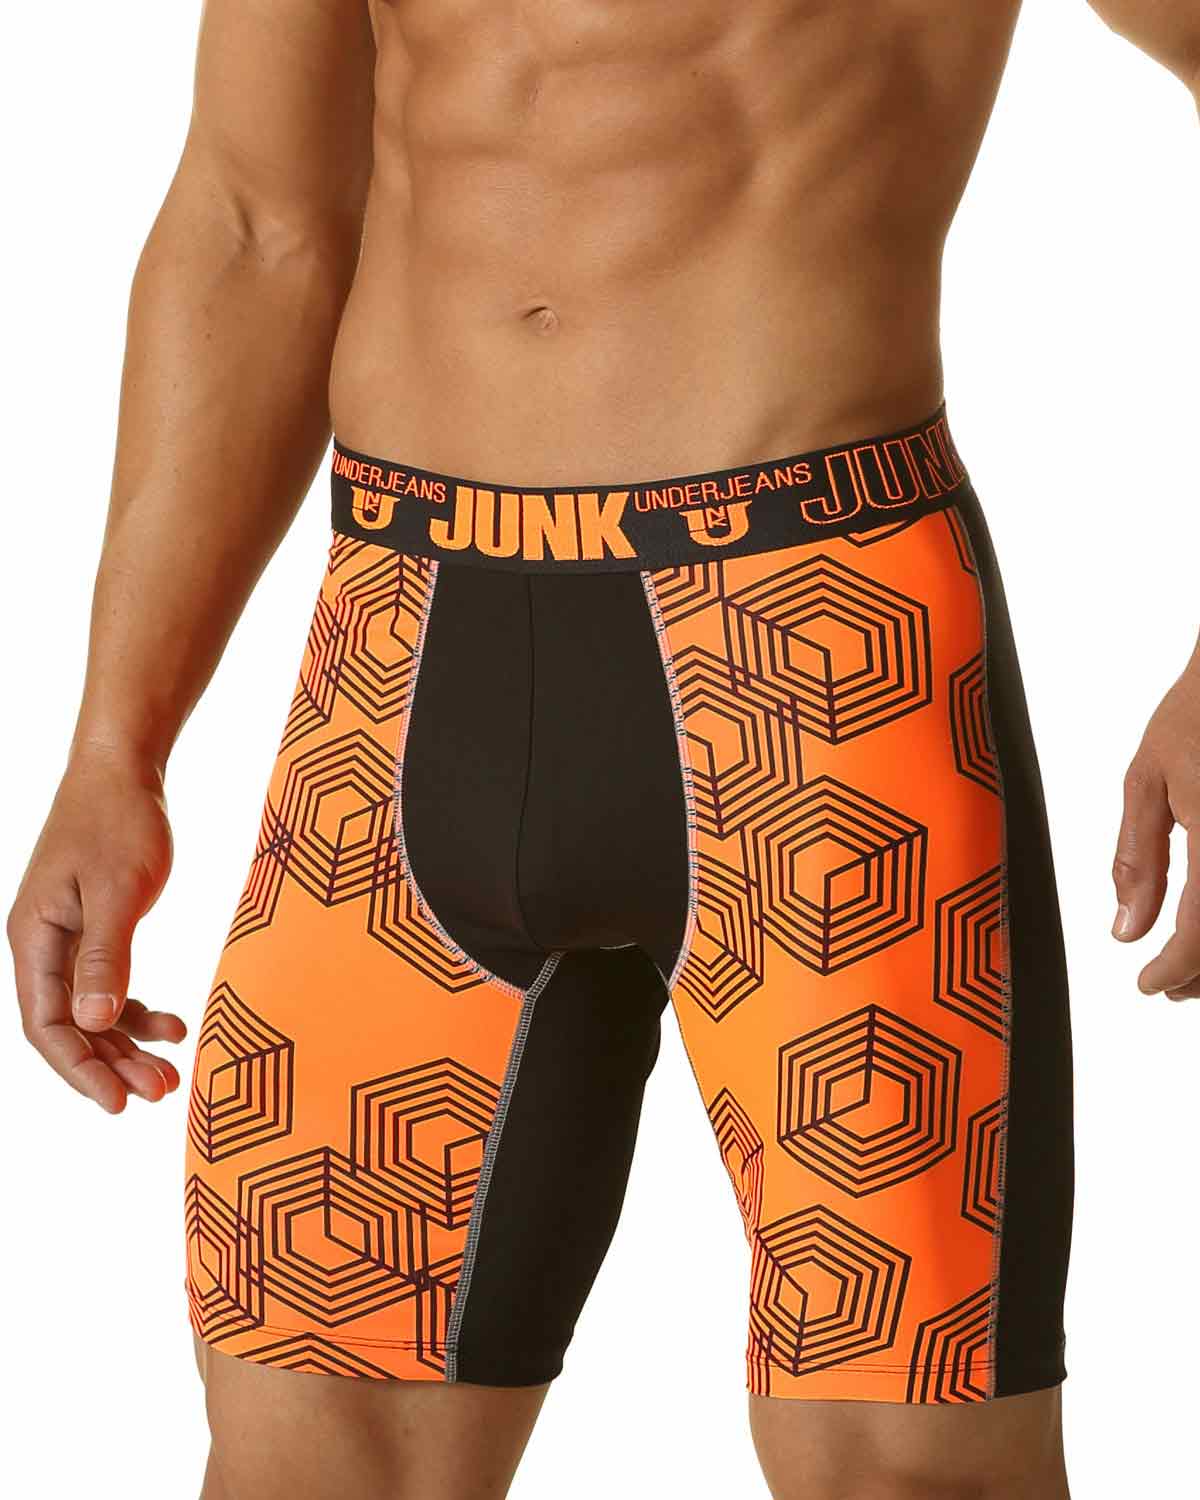 Junk Underjeans Orange Snare Knee Length Boxer